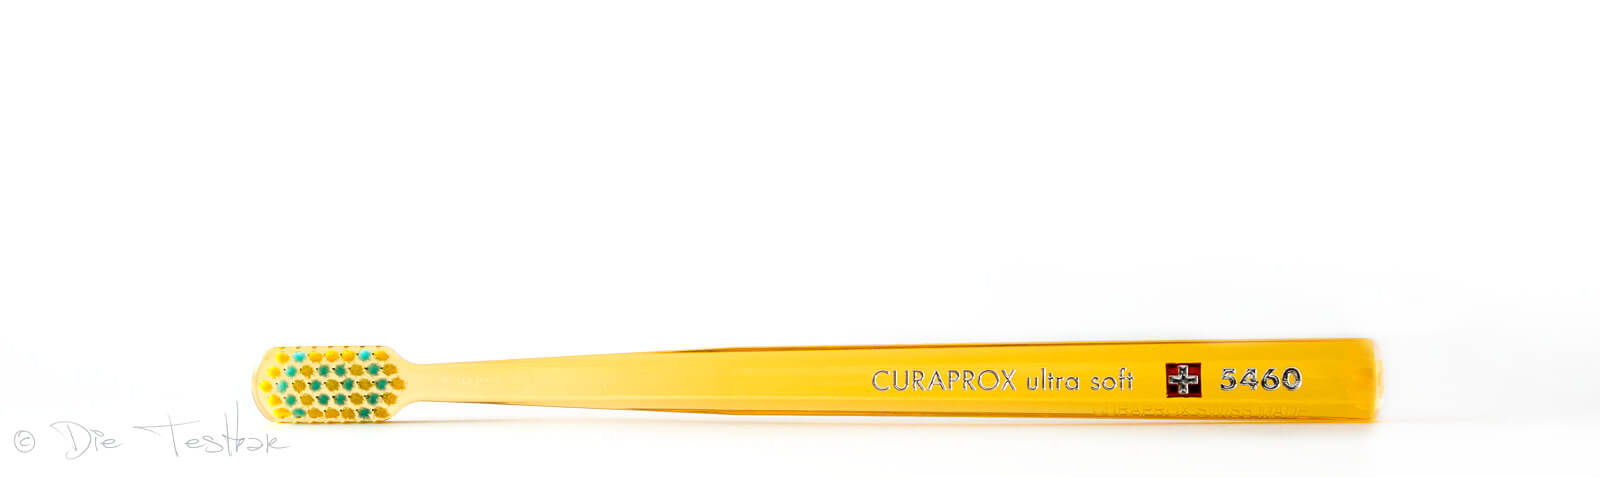 Curaprox - Stylisch bunte und innovative Zahnpflege - Alles für die perfekte Mundpflege 49